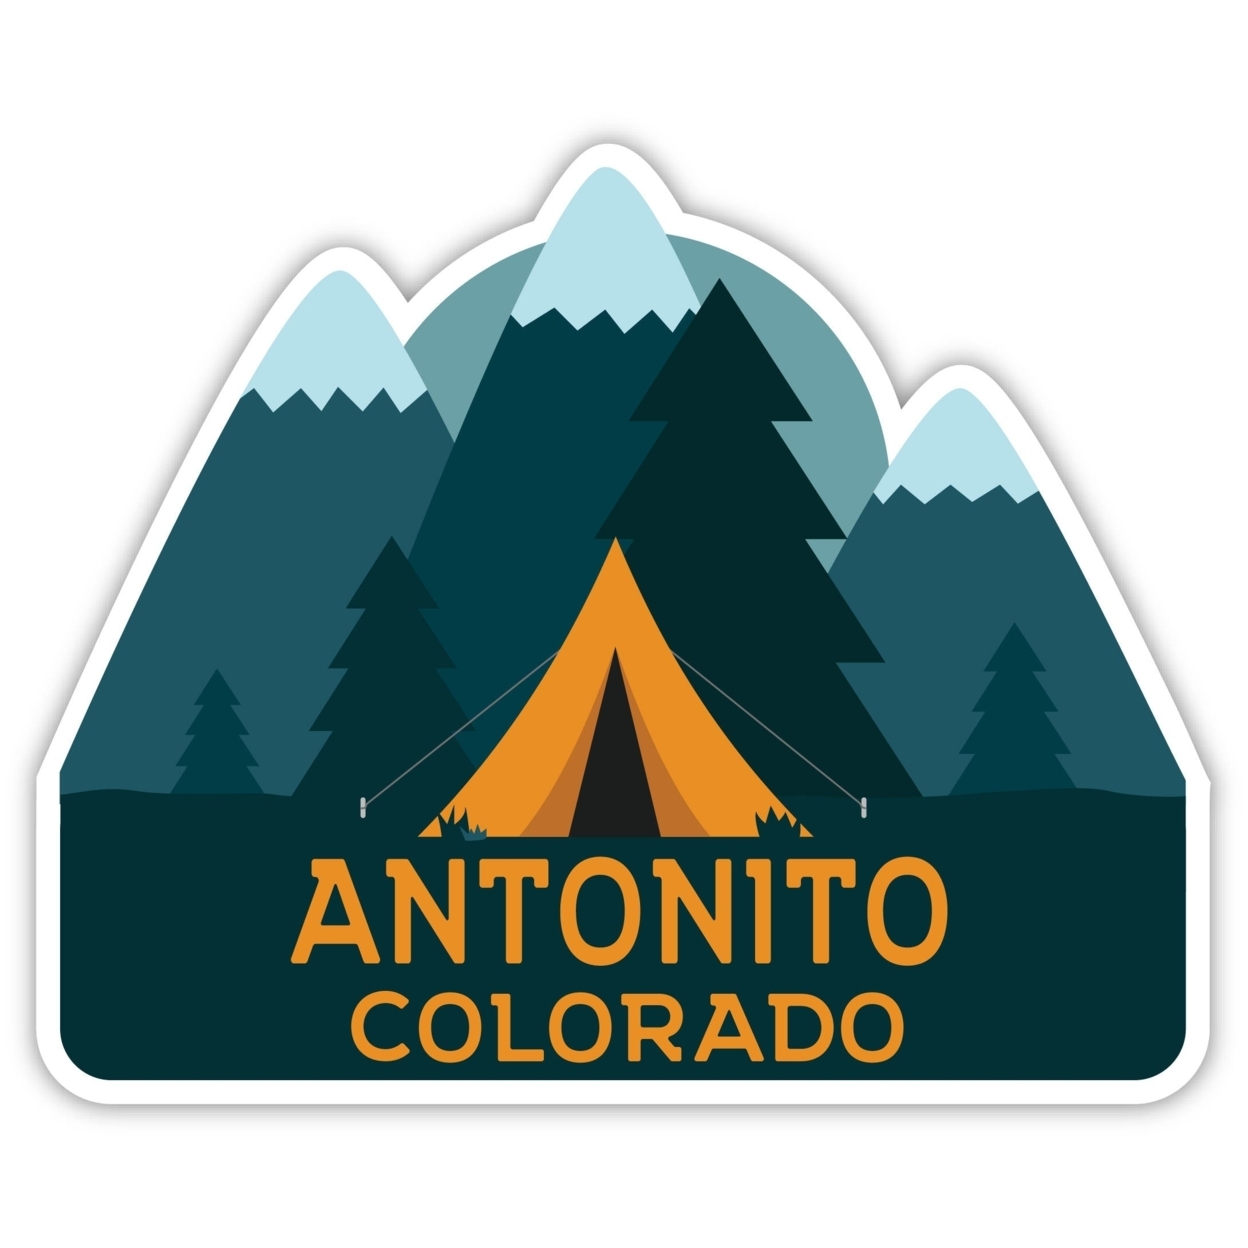 Antonito Colorado Souvenir Decorative Stickers (Choose Theme And Size) - Single Unit, 4-Inch, Tent